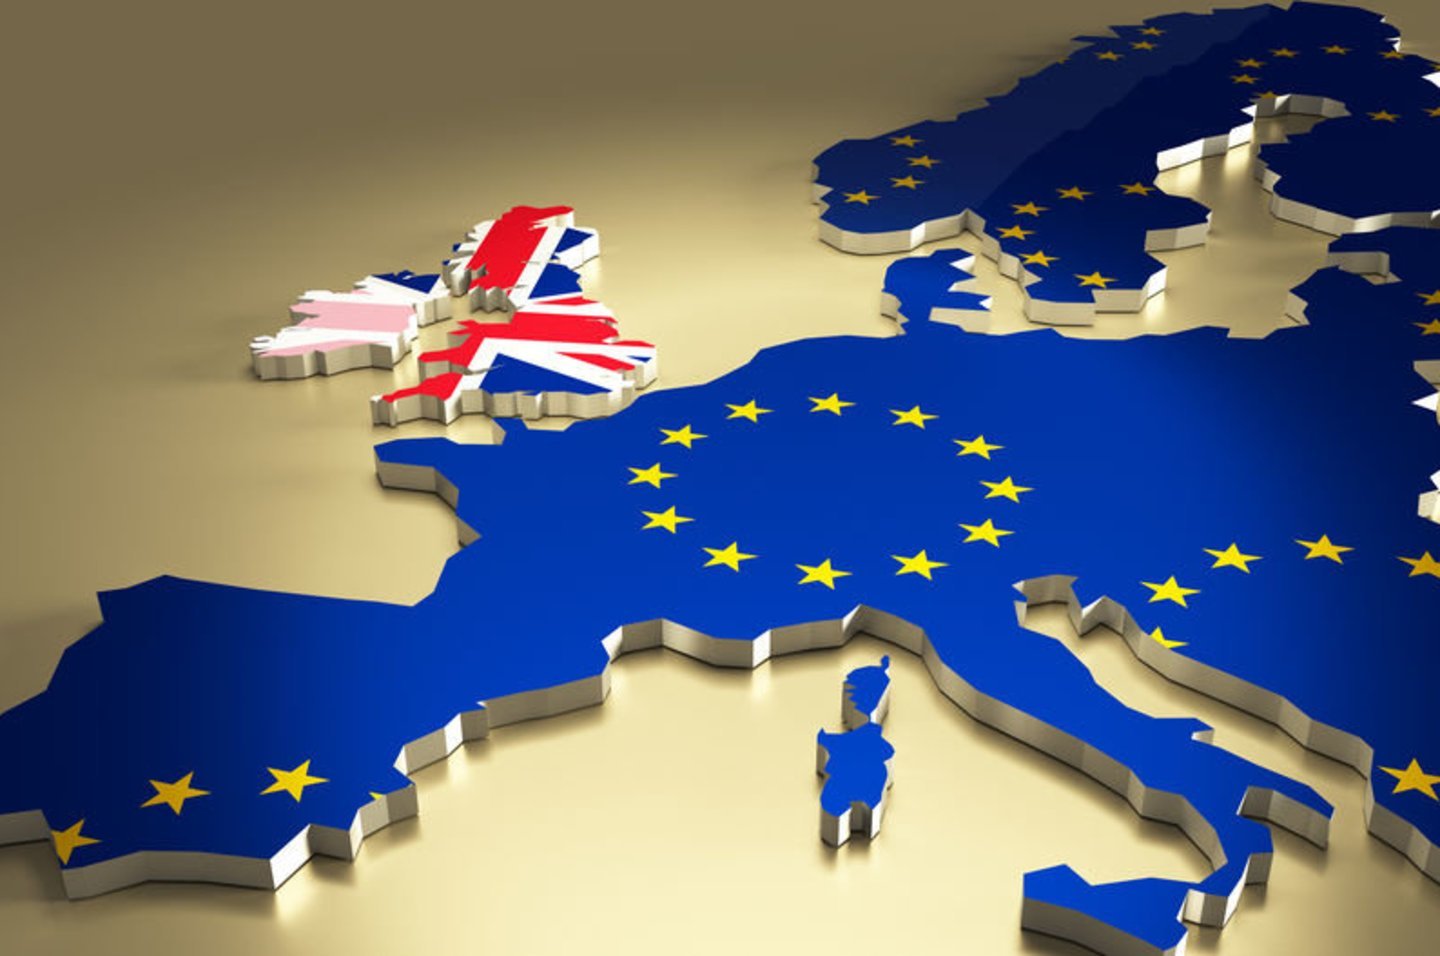 2018 m. Europos Sąjungos vadovai pritarė Didžiosios Britanijos išstojimo iš Bendrijos sutarčiai ir politinei deklaracijai dėl būsimų ES ir Didžiosios Britanijos santykių.<br>123rf